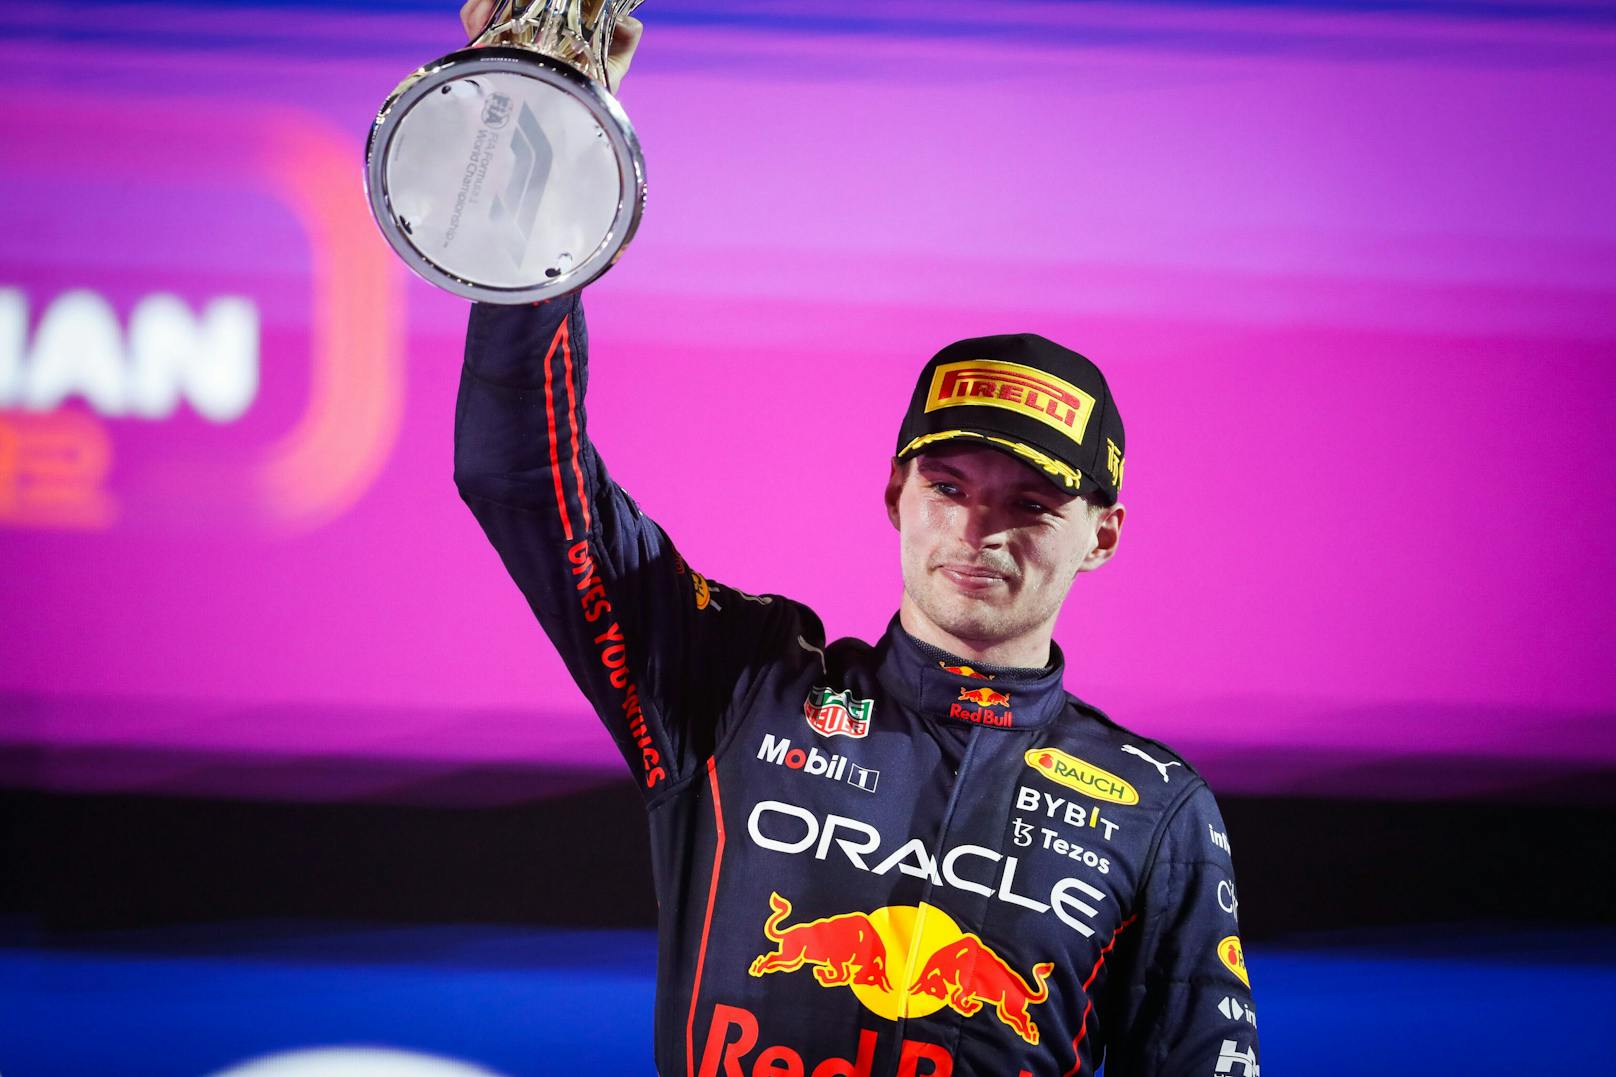 Max Verstappen gewinnt das zweite Saisonrennen der Formel 1 in Jeddah, Saudi-Arabien. Der Red-Bull-Star setzt sich im packenden Taktik-Duell gegen Ferrari-Pilot Charles Leclerc durch. Das Rennen in Bildern.